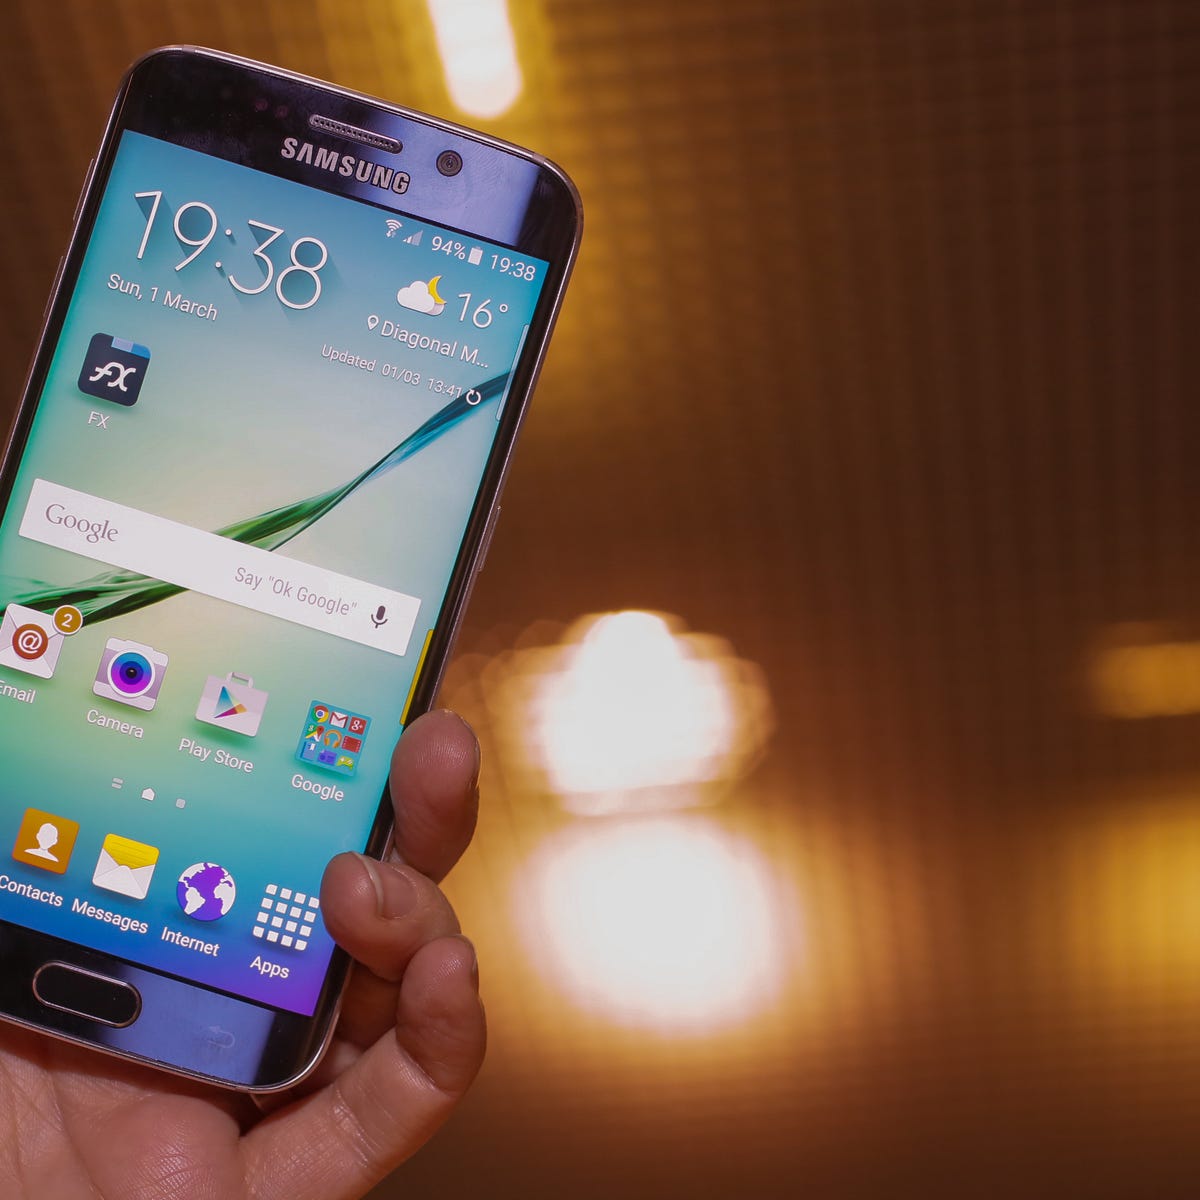 Administración Suposición estómago Samsung Galaxy S6 Edge review: Striking curved design makes this the S6 to  crave - CNET